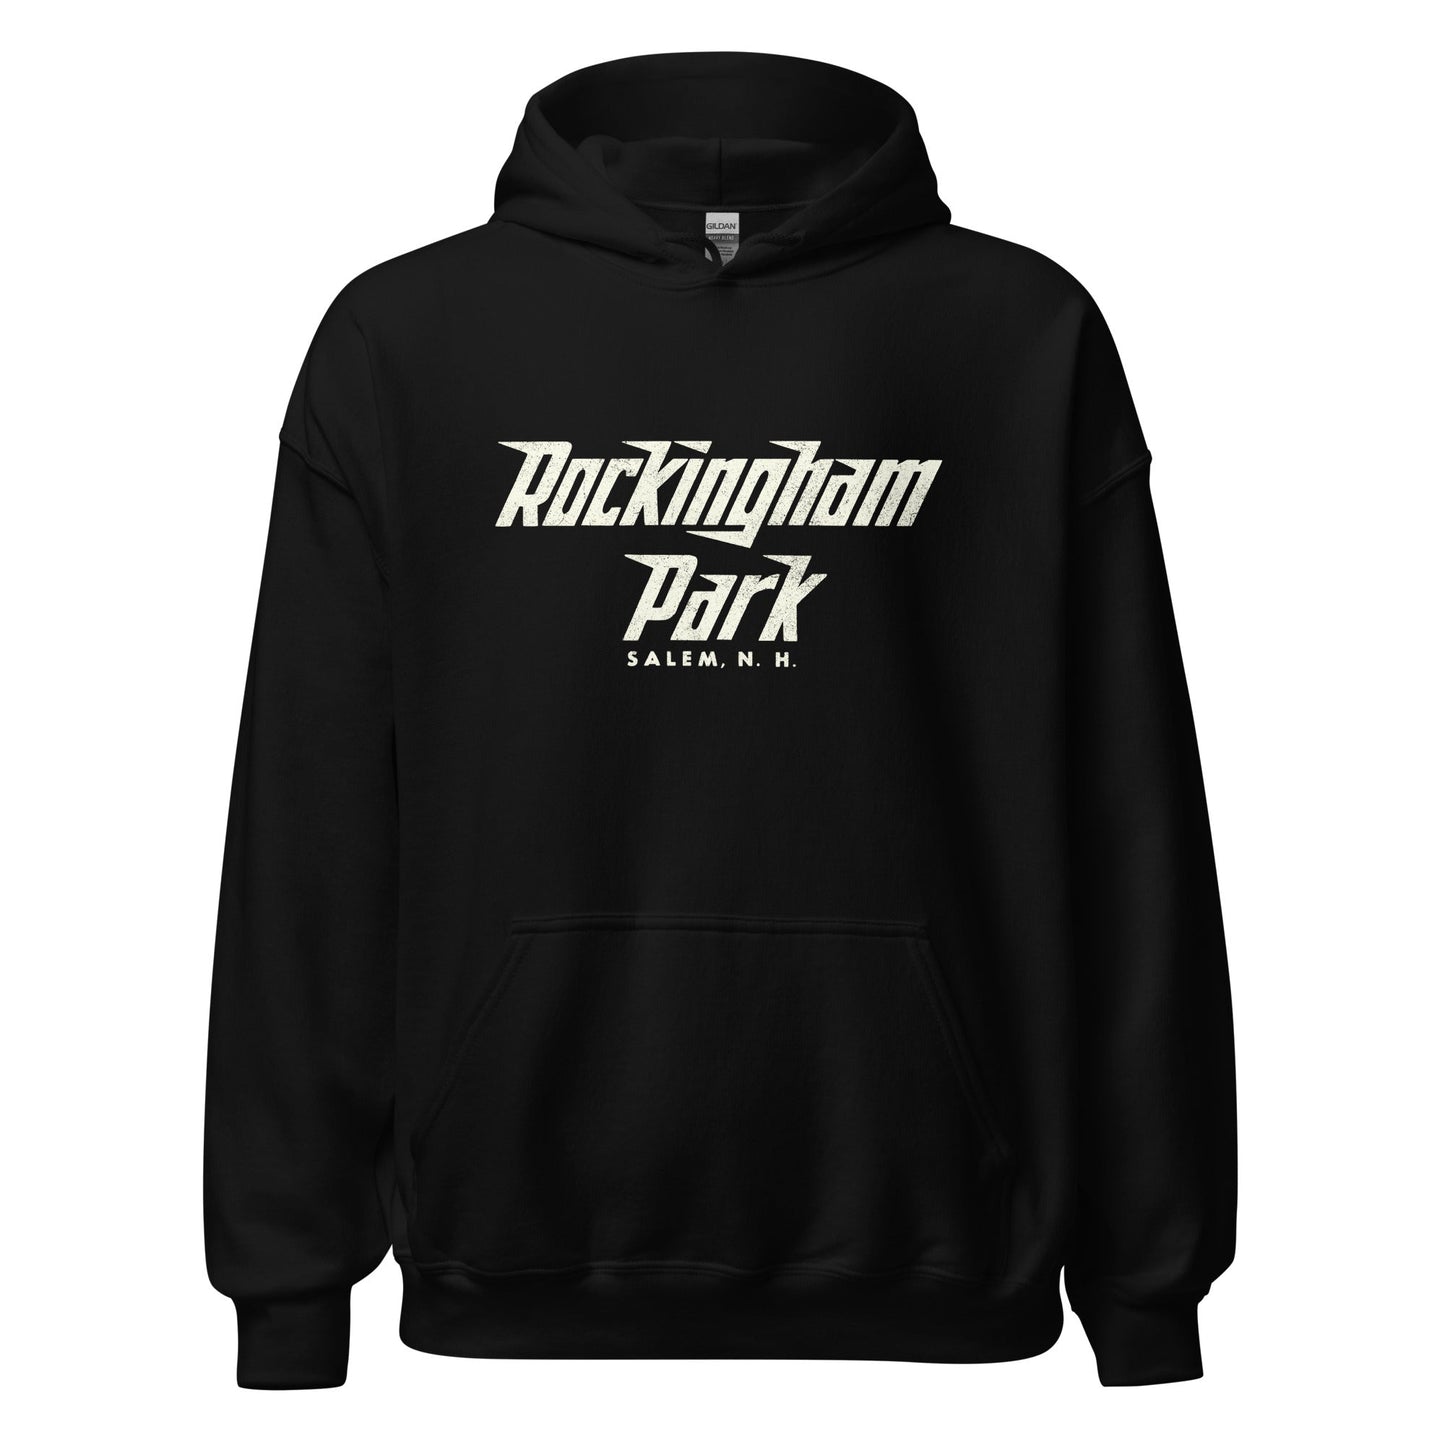 Rockingham Park Hoodie - Salem, NH | Retro Horse Racing Sweatshirt